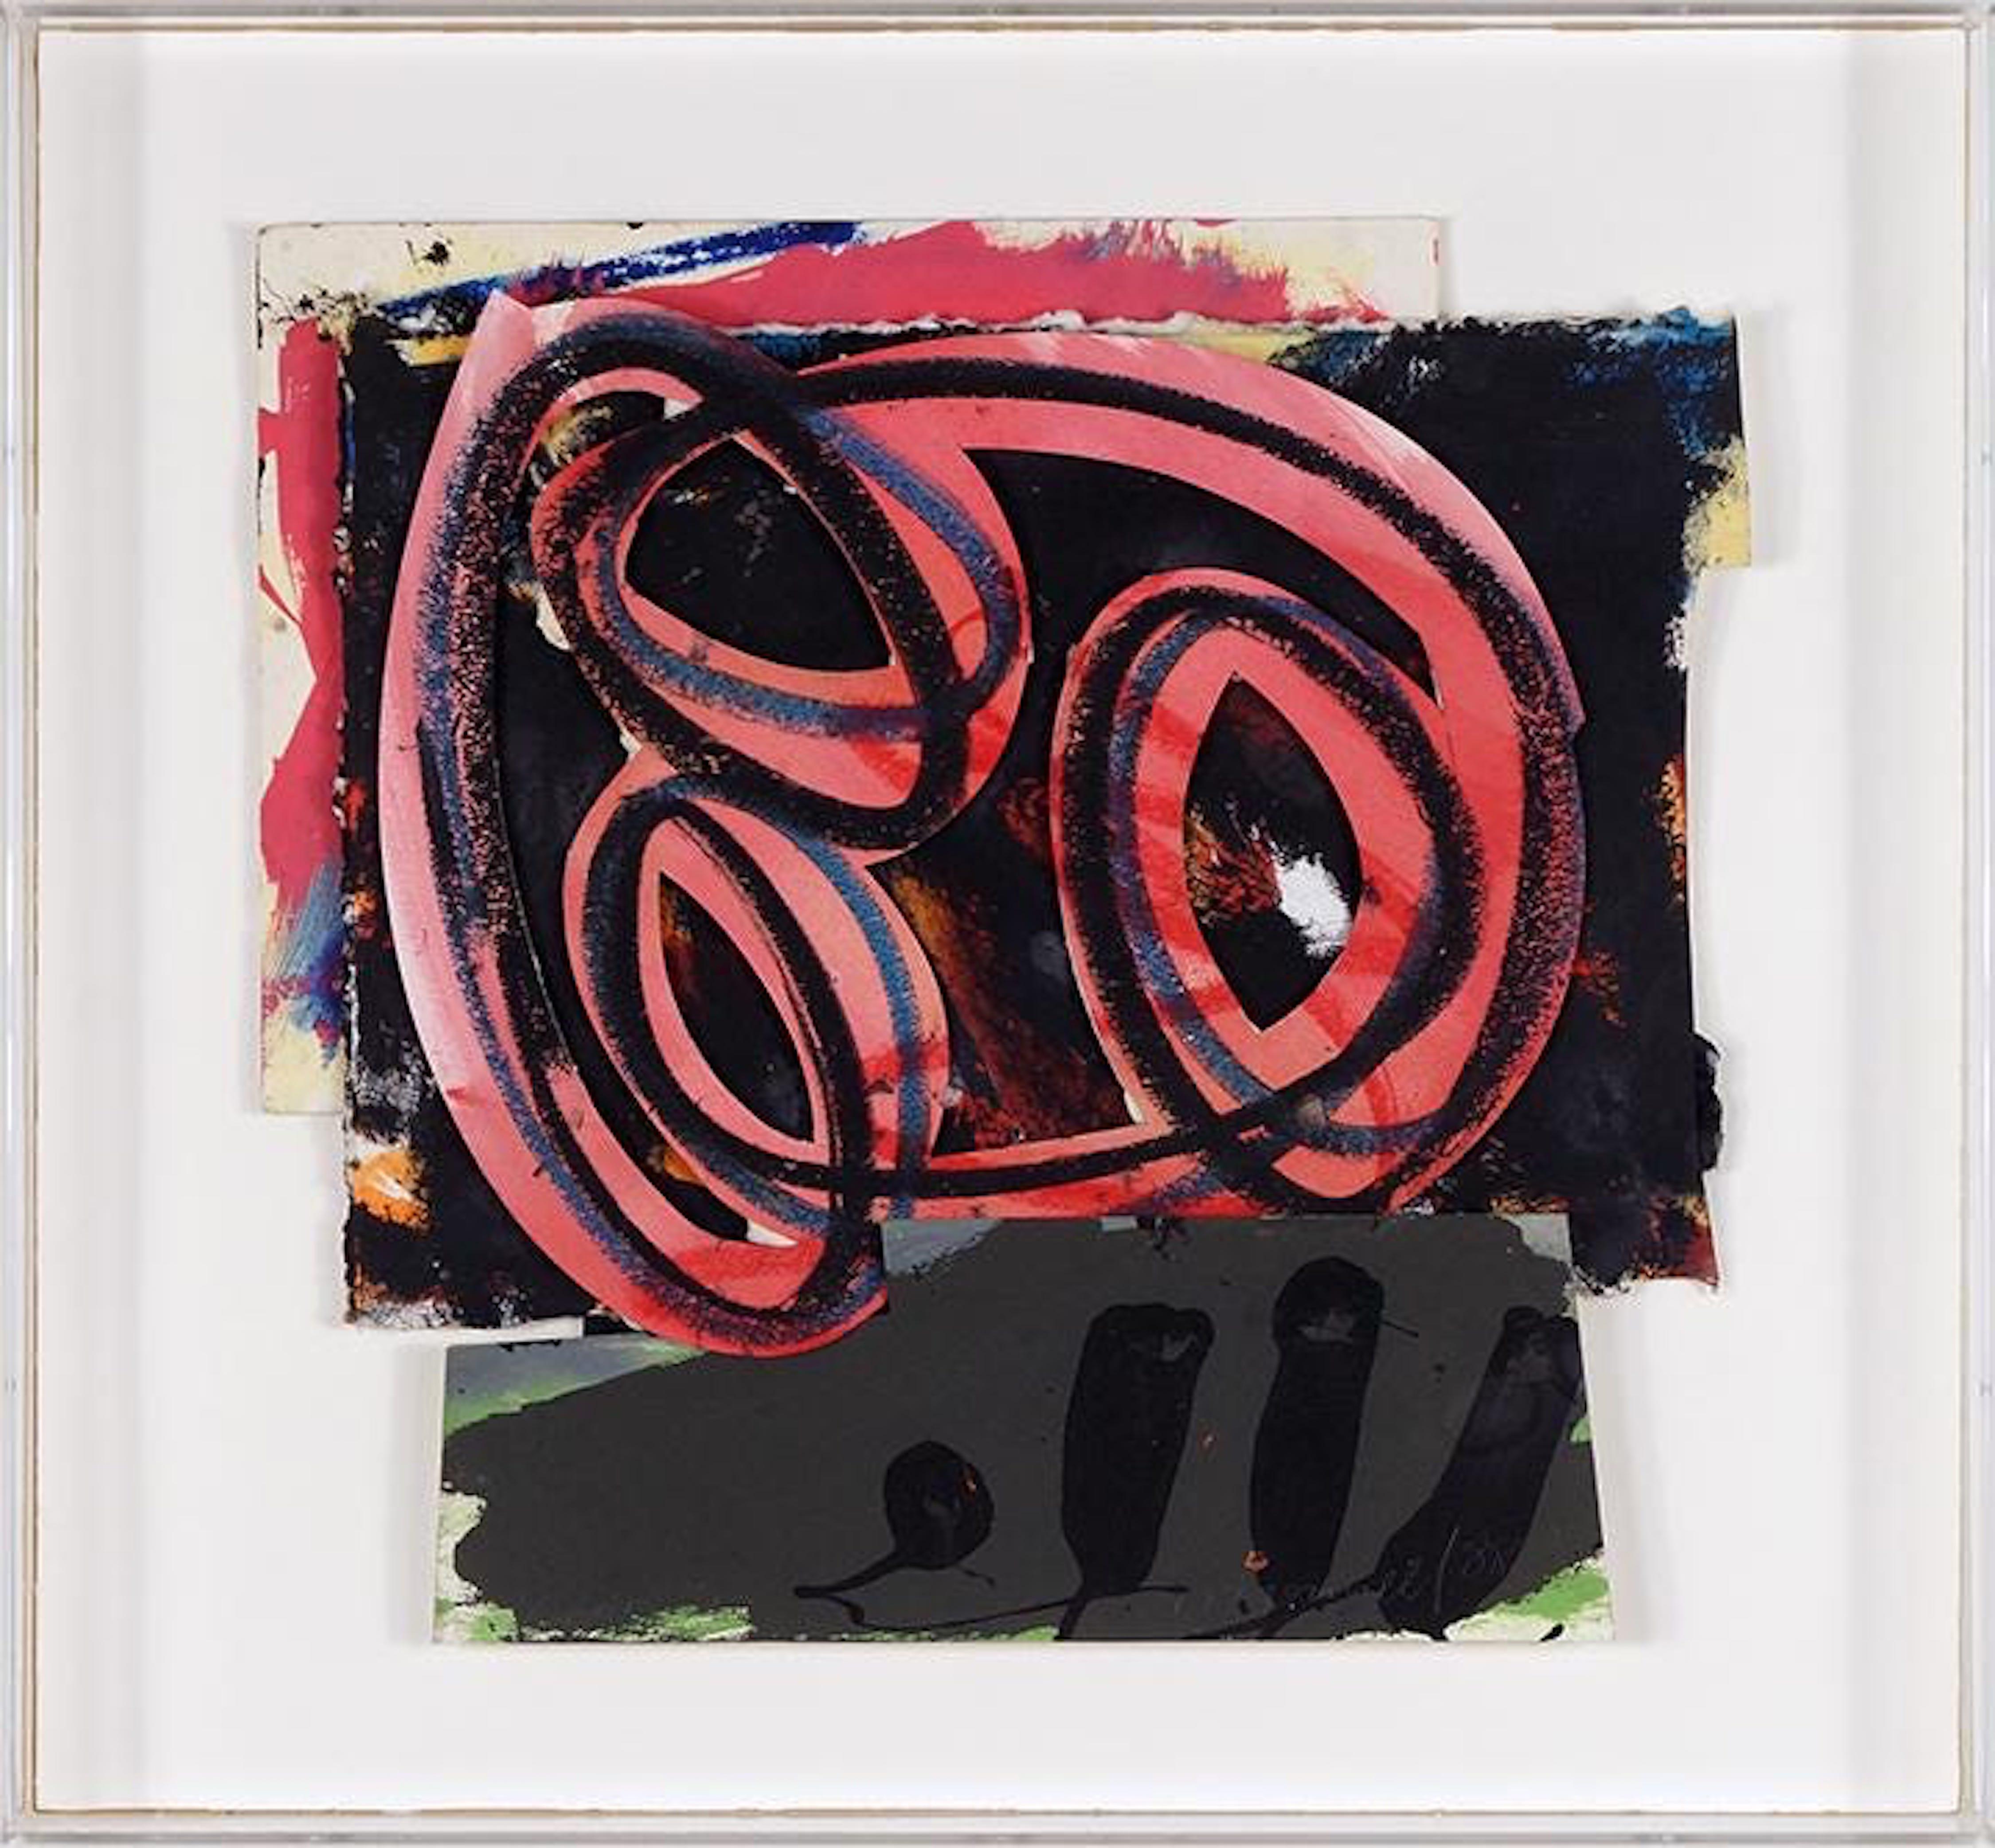 Abstrakt-expressionistische Pop-Art-Gemälde-Collage aus den 1980er Jahren, Assemblage Hugh O''Donnell